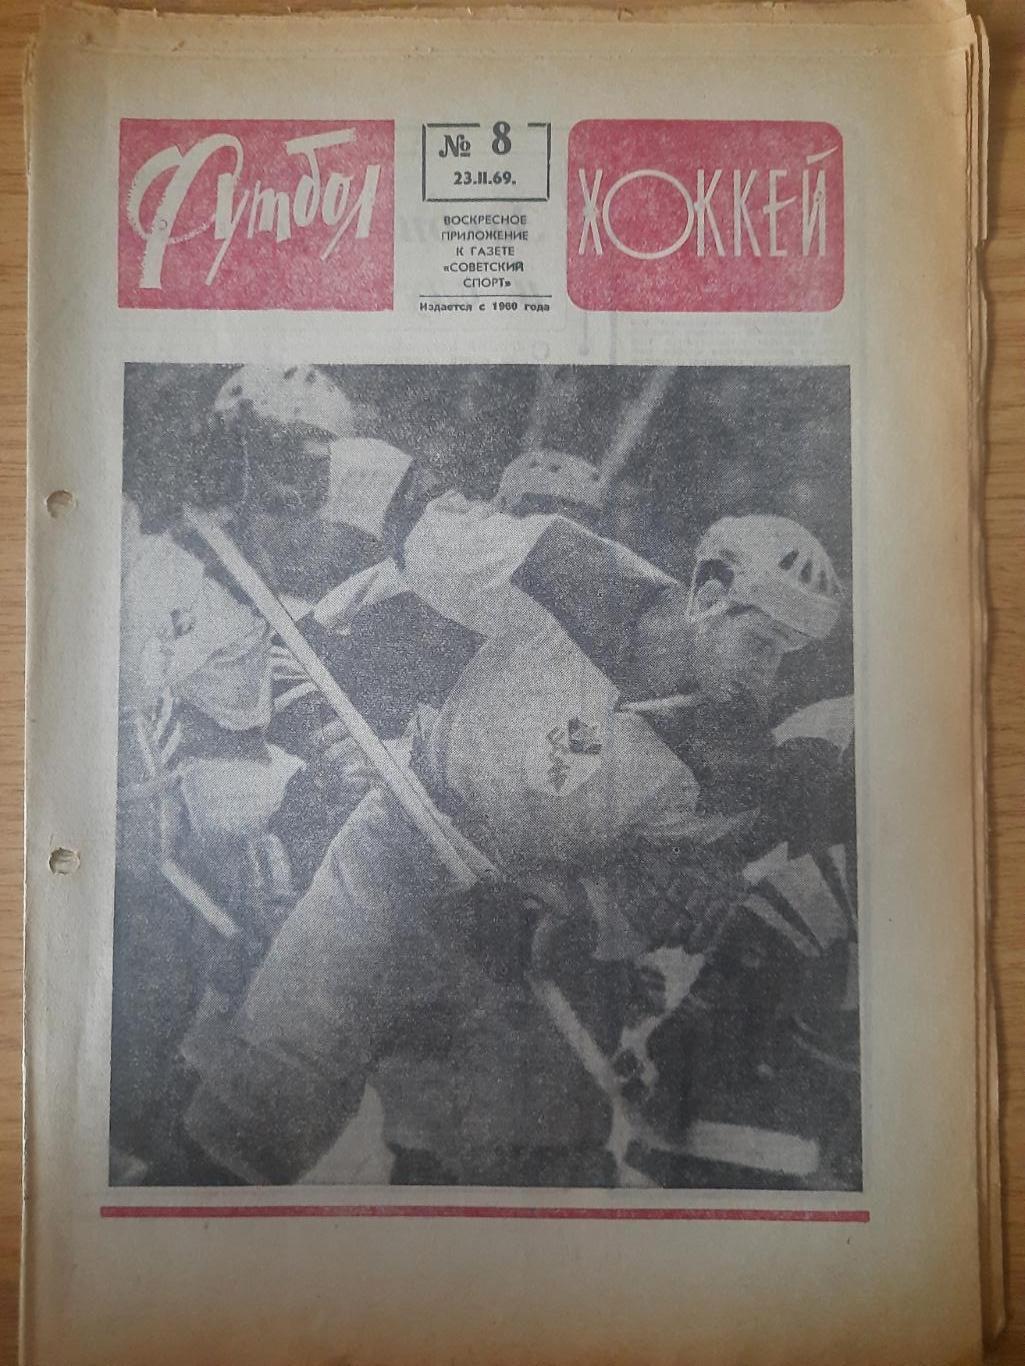 еженедельник футбол-хоккей #8,1969.